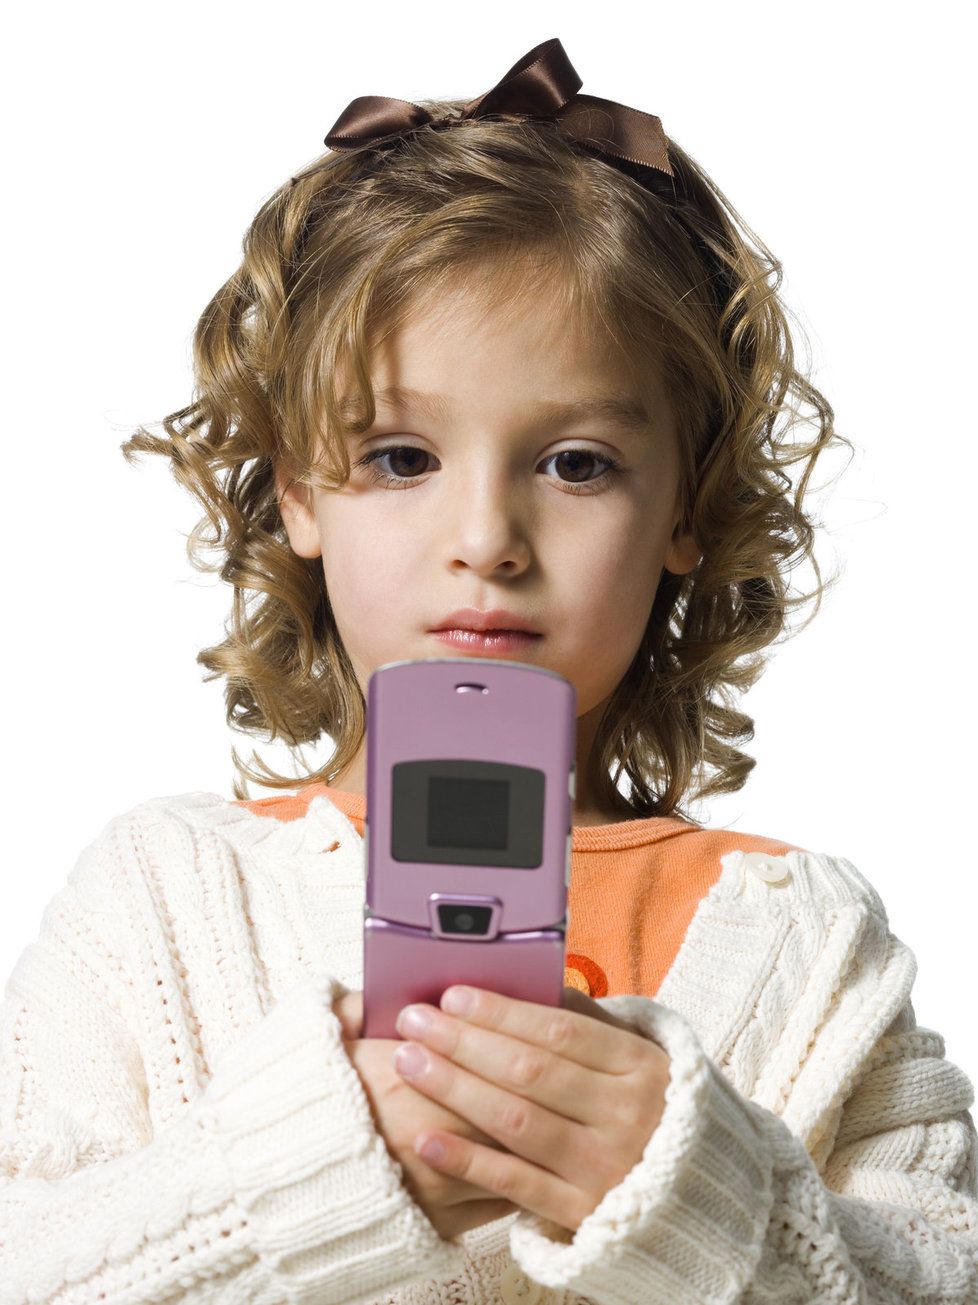 Závislost dětí na digitálních přístrojích může být prý i užitečná. (Ilustrační foto)